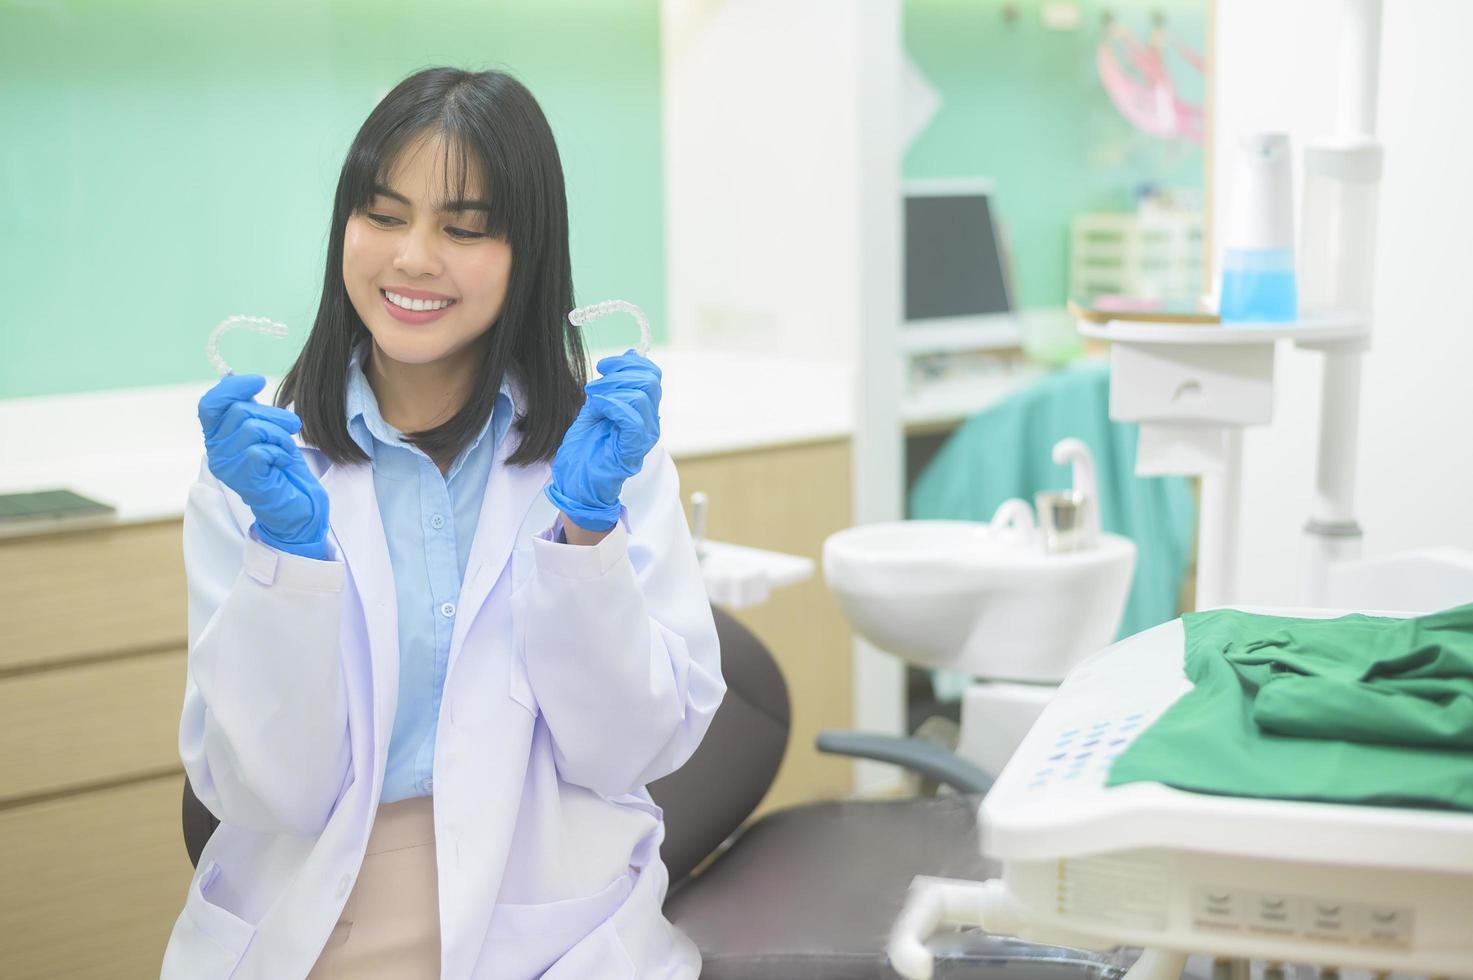 jeune femme dentiste tenant invisalign dans une clinique dentaire, contrôle des dents et concept de dents saines photo